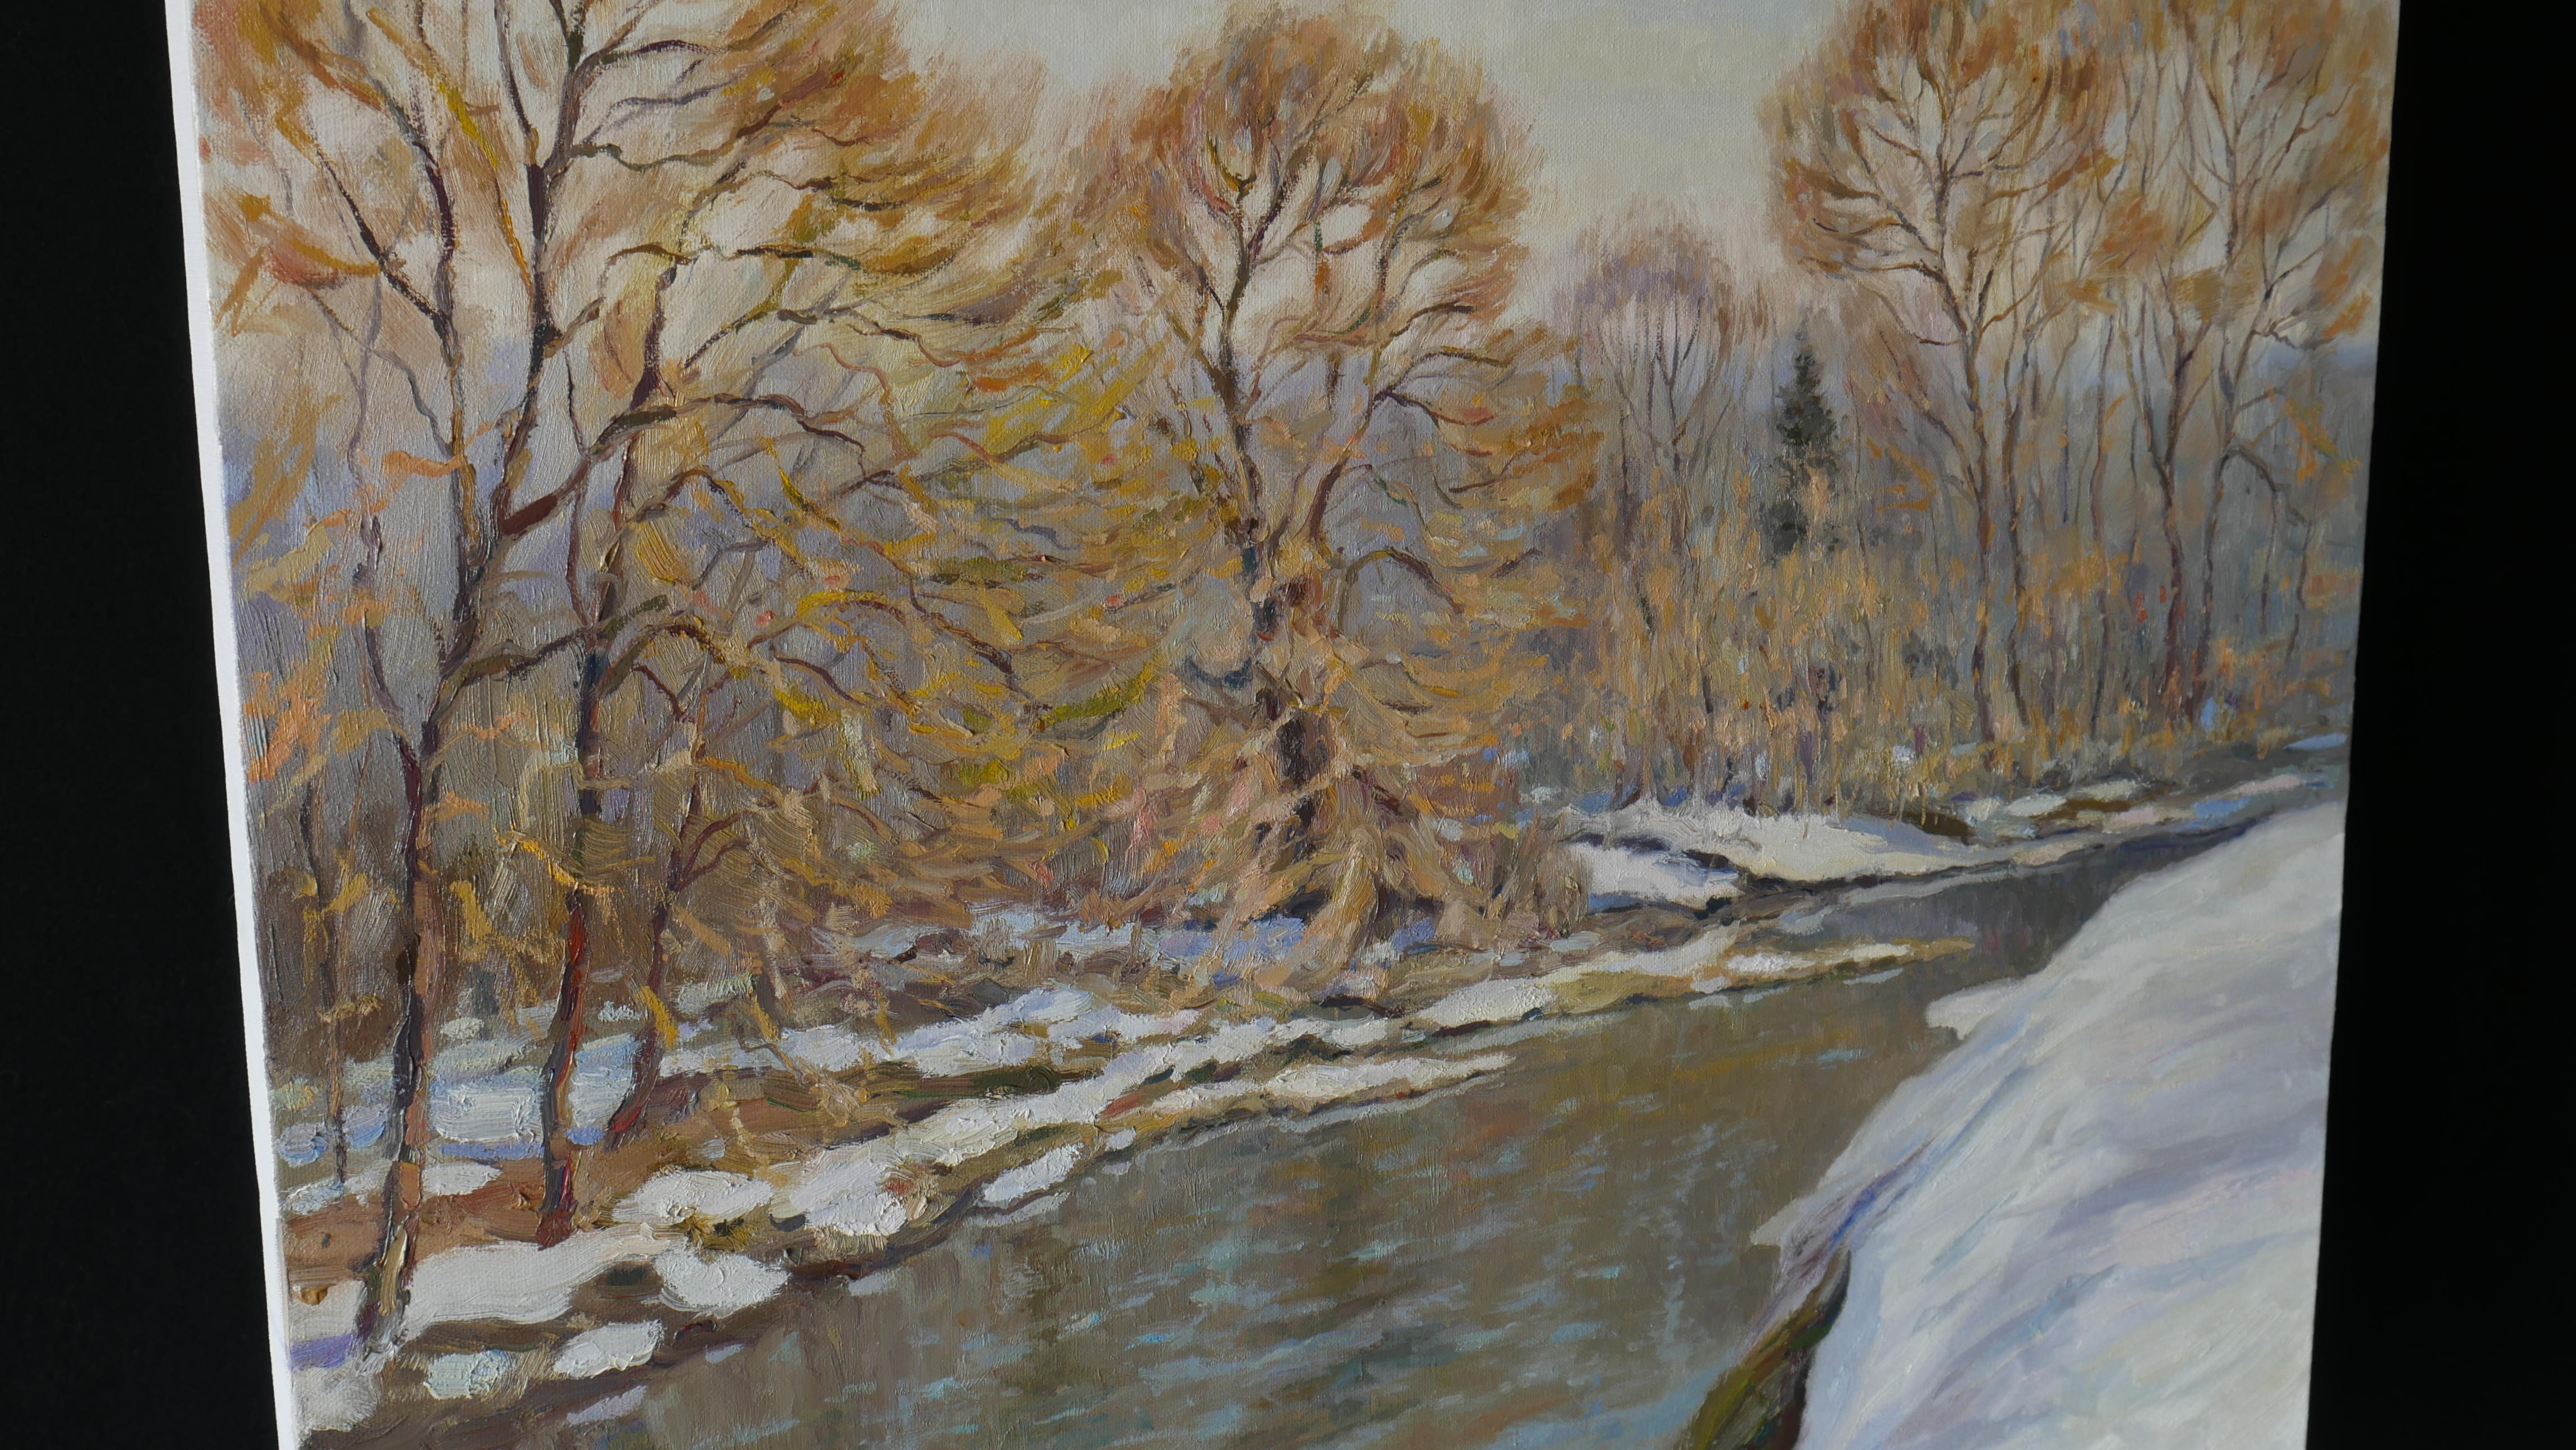 Le paysage impressionniste ensoleillé avec une rivière et la dernière neige est une décoration d'intérieur belle, vivante et légère, la peinture en plein air est créée dans des couleurs douces et agréables.
Les derniers jours de l'hiver sont